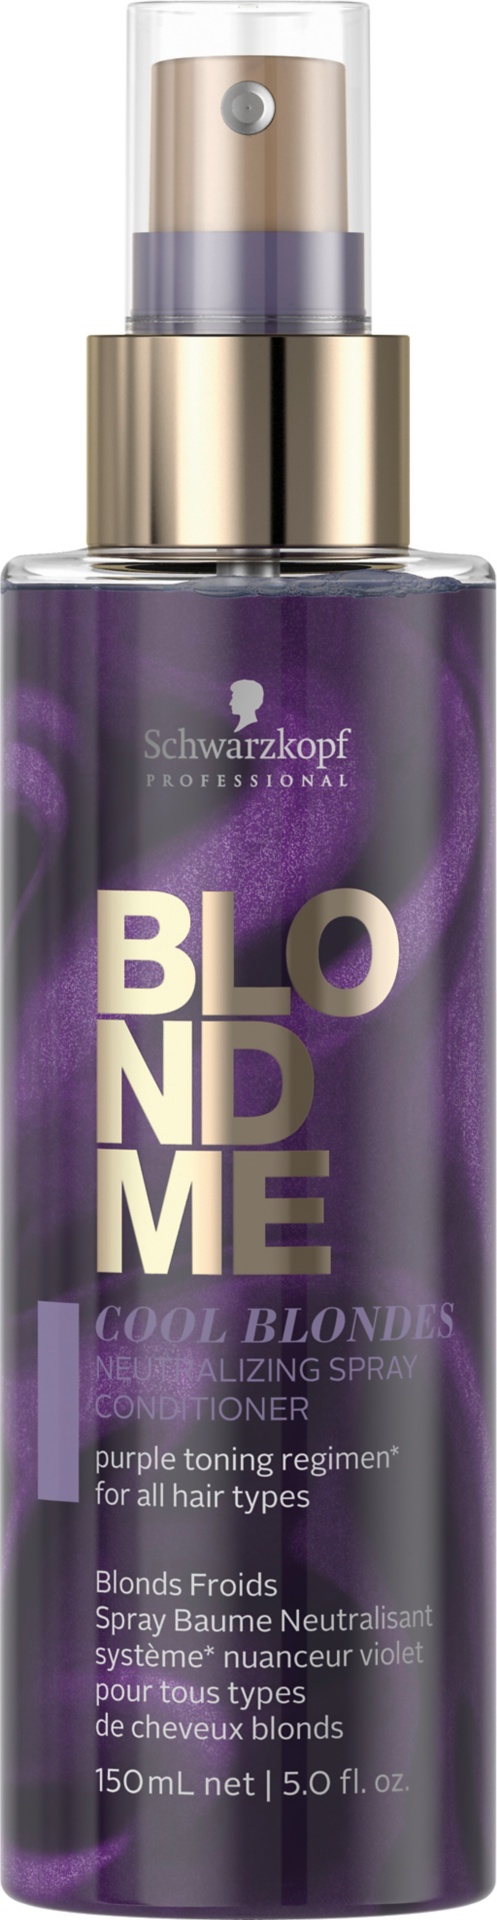 Schwarzkopf Professional BLONDME Cool Blondes Neutralizing Spray Conditioner